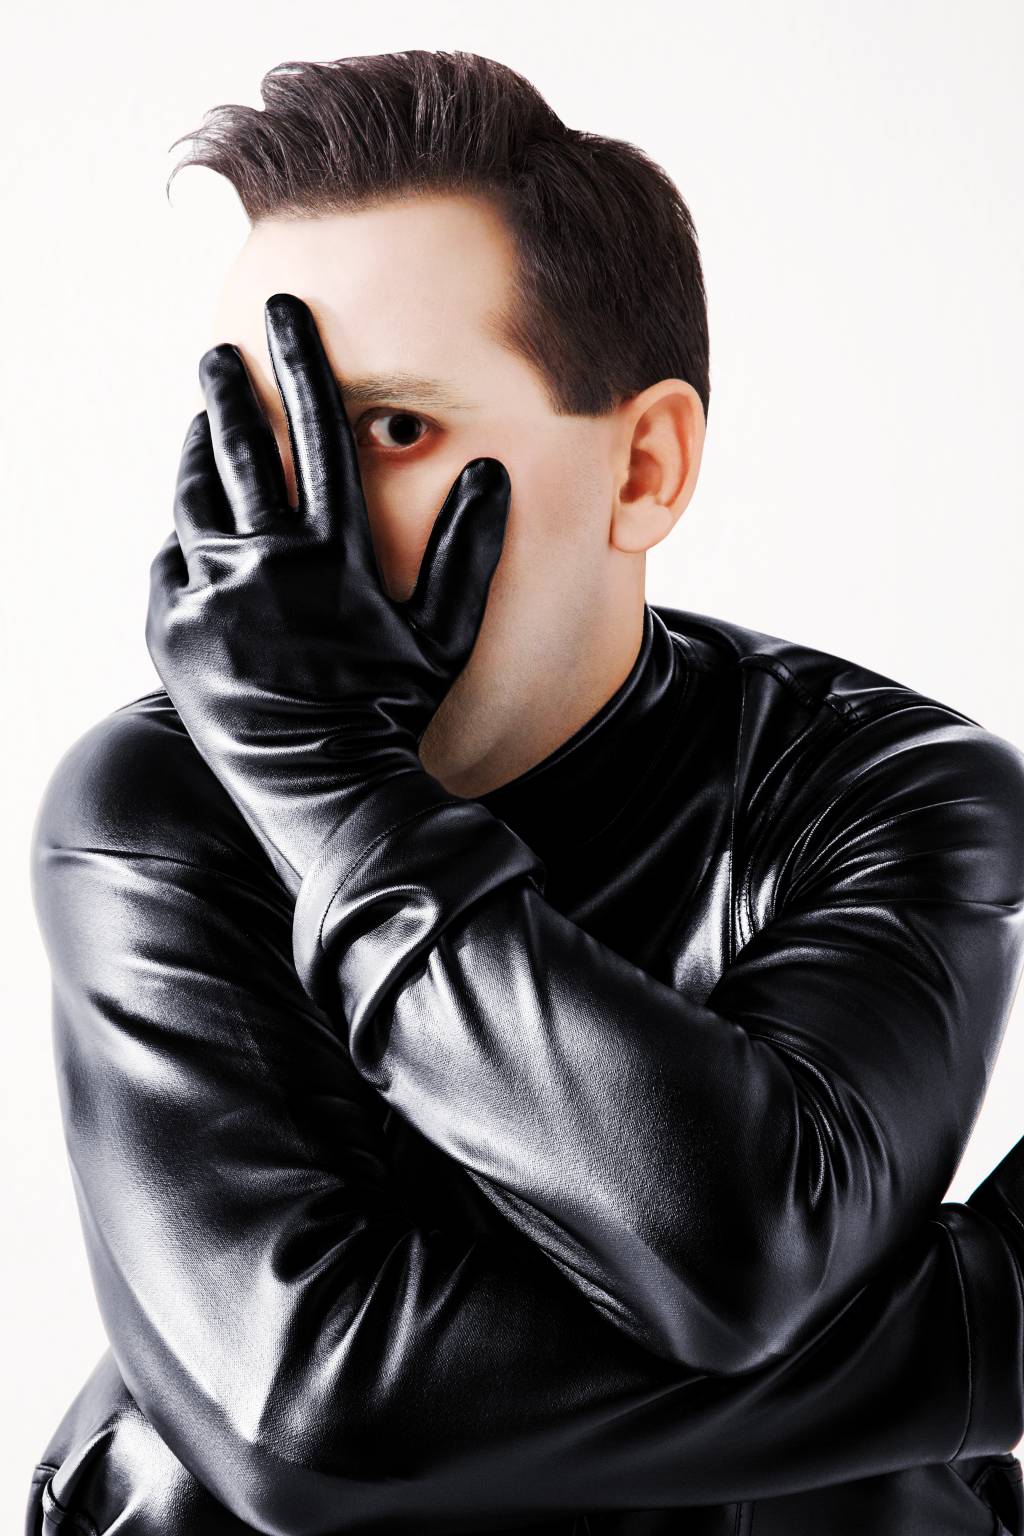 Homem com roupa de couro preta com uma das mãos, de luva preta, no rosto